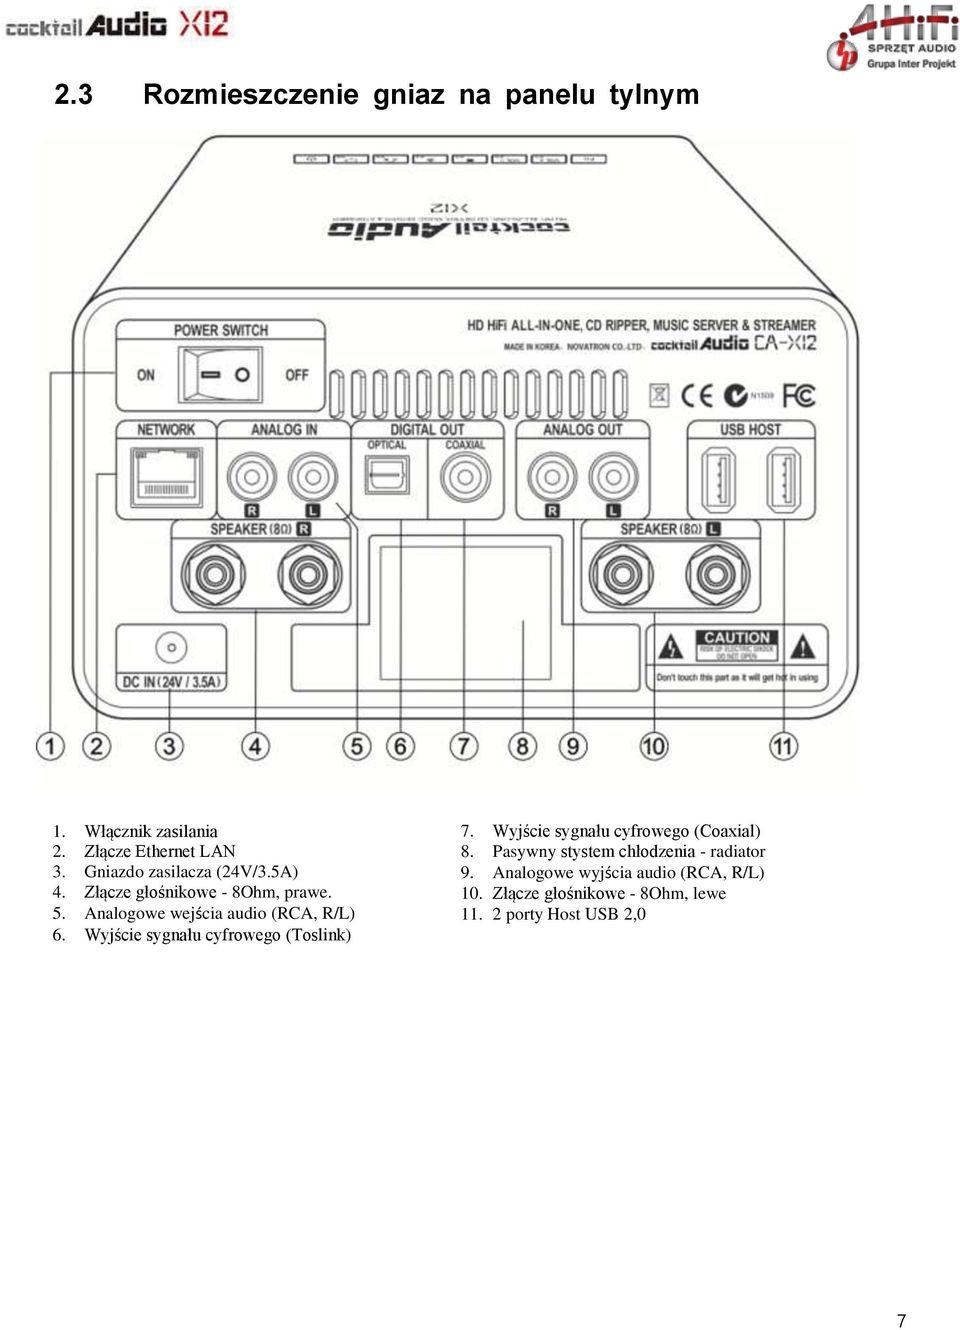 Analogowe wejścia audio (RCA, R/L) 6. Wyjście sygnału cyfrowego (Toslink) 7.